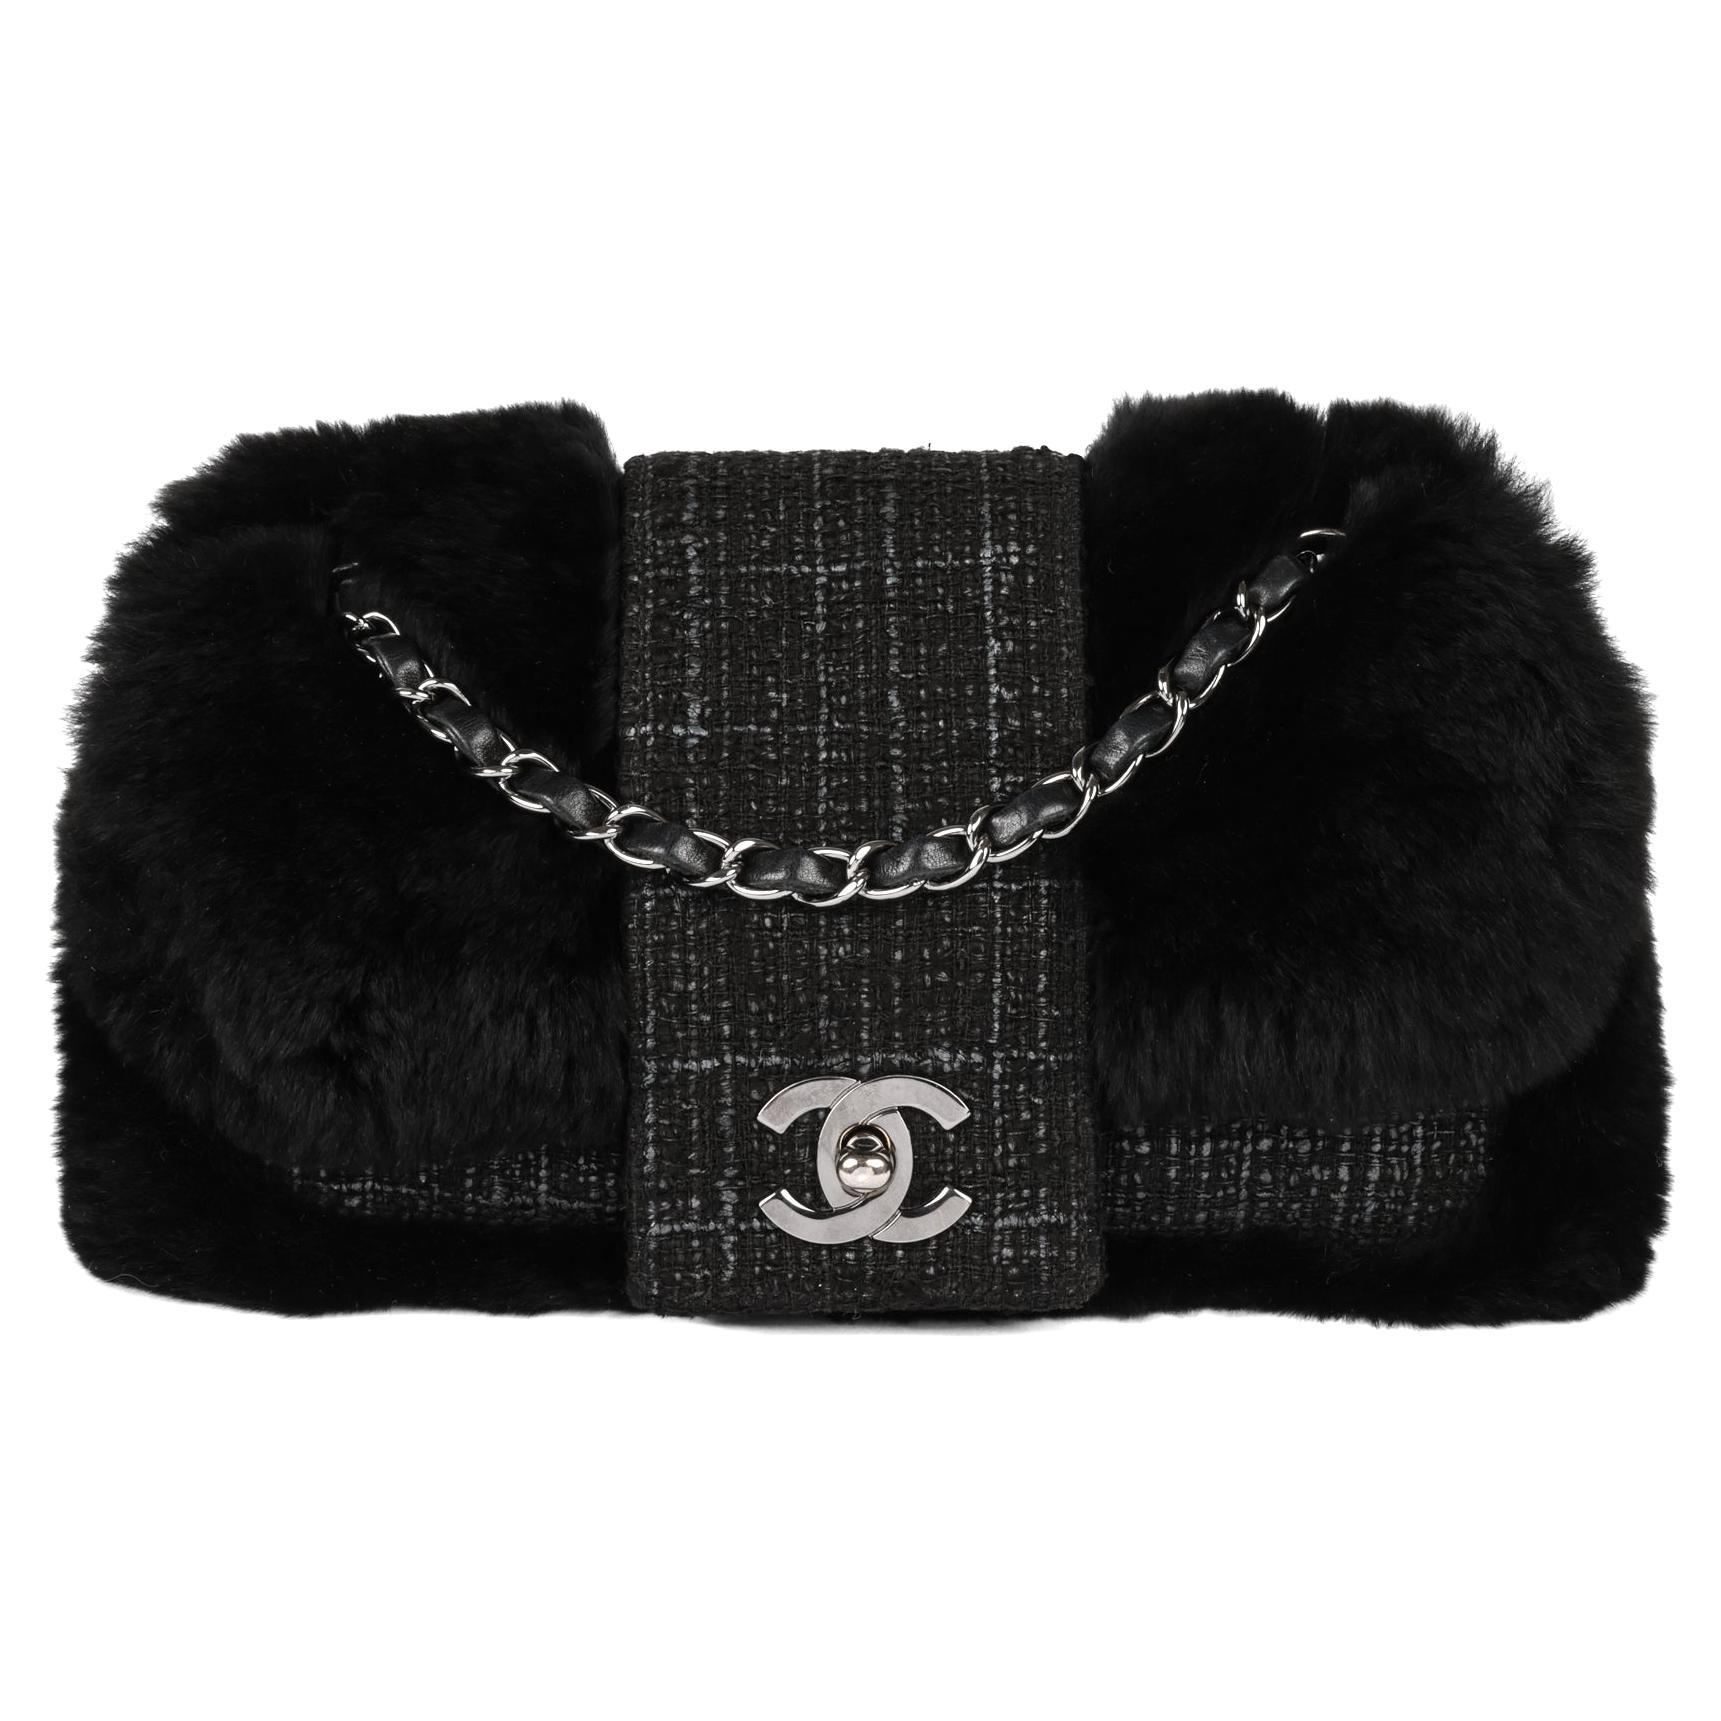 CHANEL Black Fantasy Fur & Grey Tweed Medium Classic Single Flap Bag